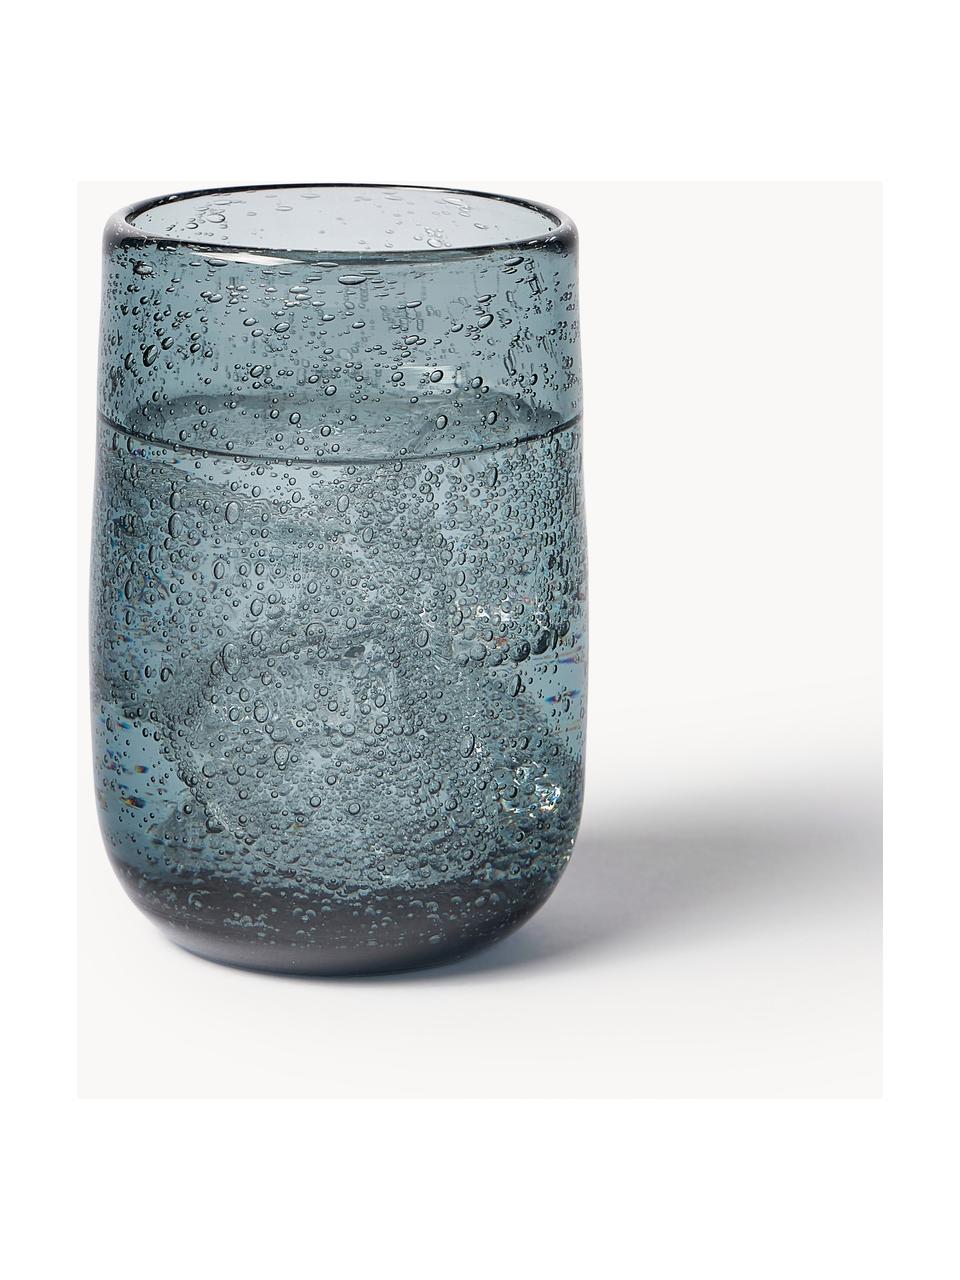 Waterglazen Bari met luchtbellen, 6 stuks, Glas, Grijsblauw, Ø 7 x H 11 cm, 330 ml